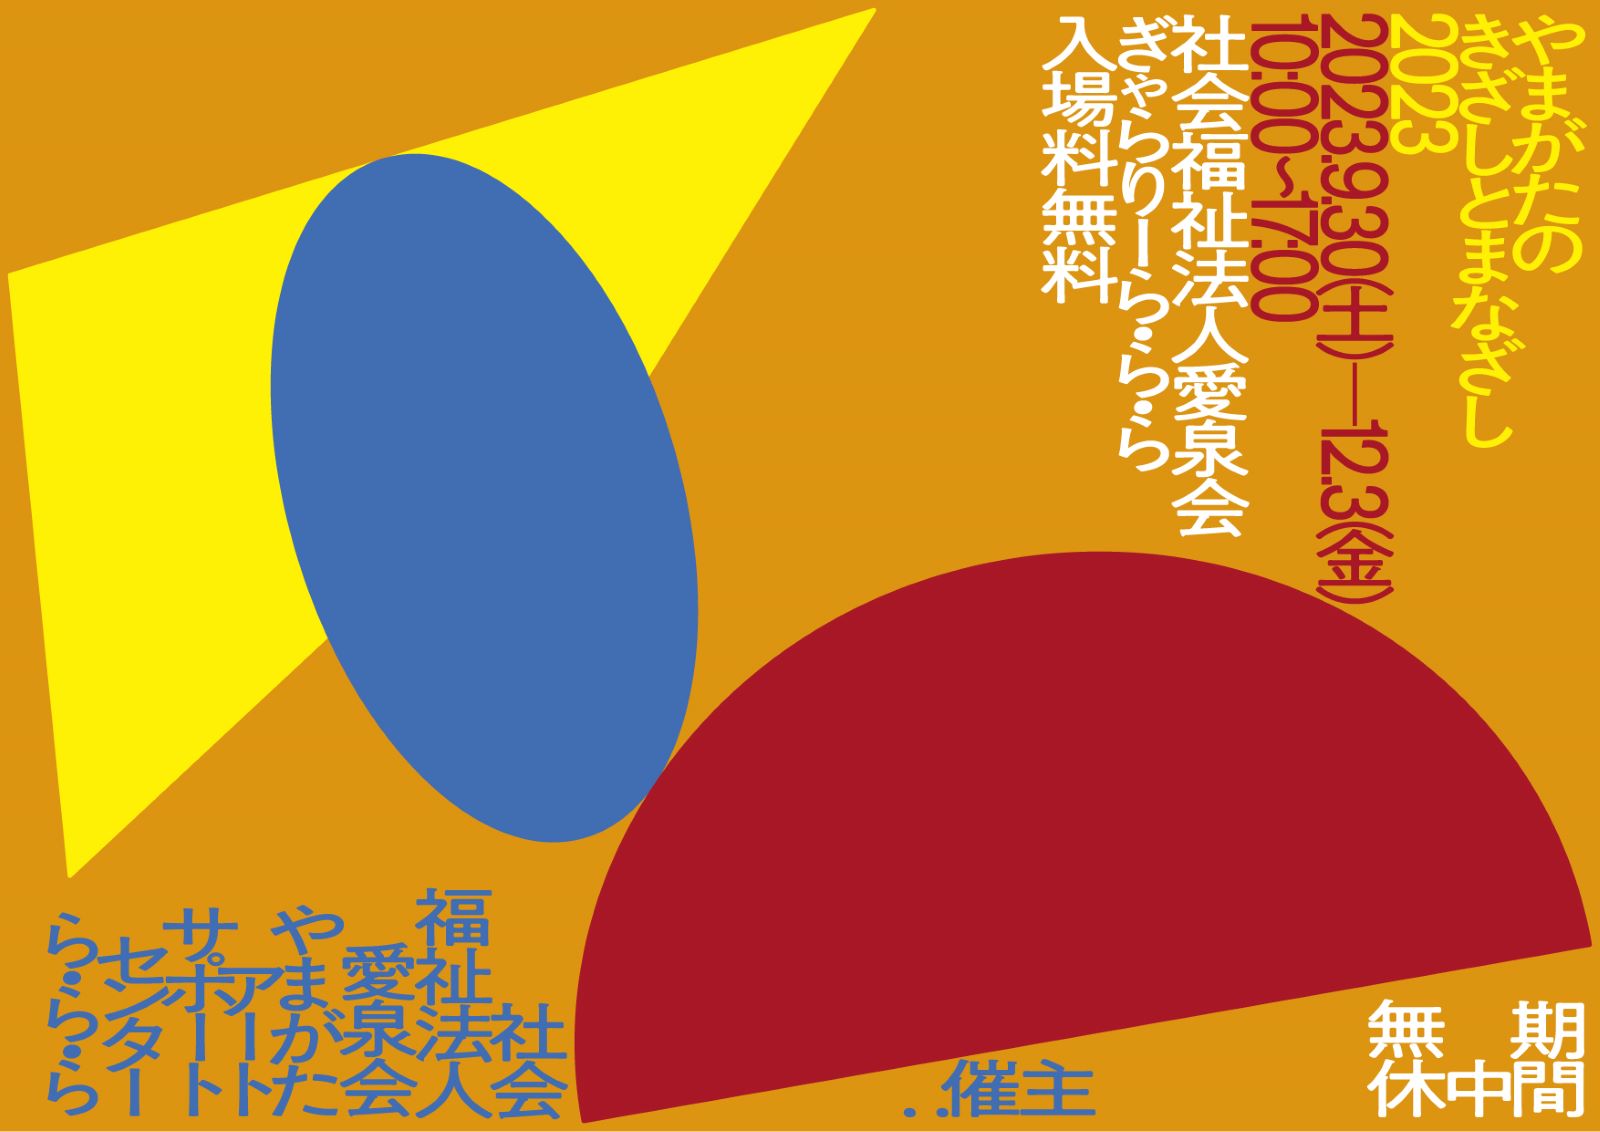 展覧会のイメージ画像。オレンジの背景に赤い半円、青い楕円、黄色の三角がバランスよく配置されている